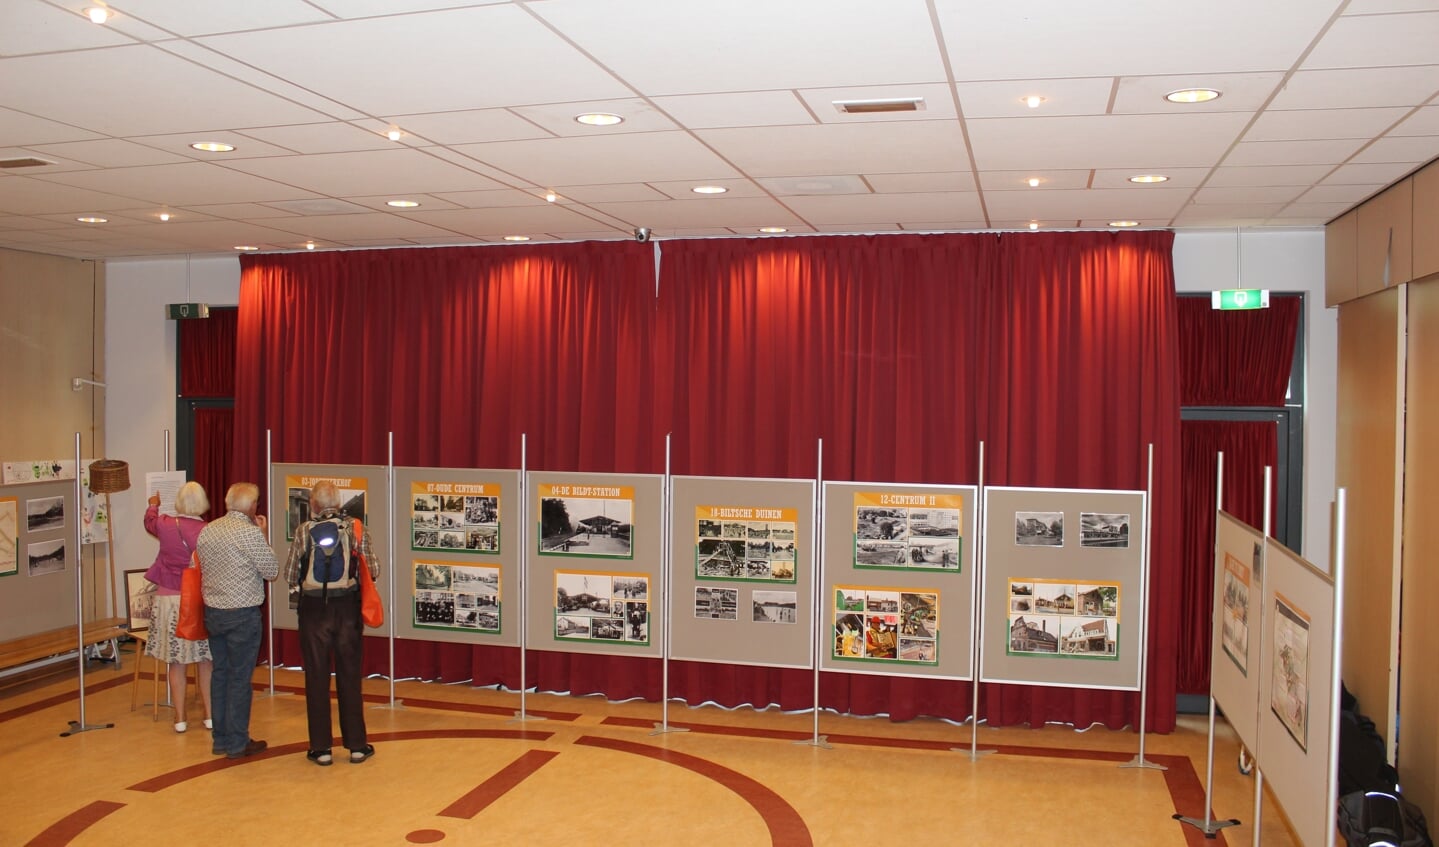 In de school was een deel van de tentoonstelling over 100 jaar Bilthoven ingericht.